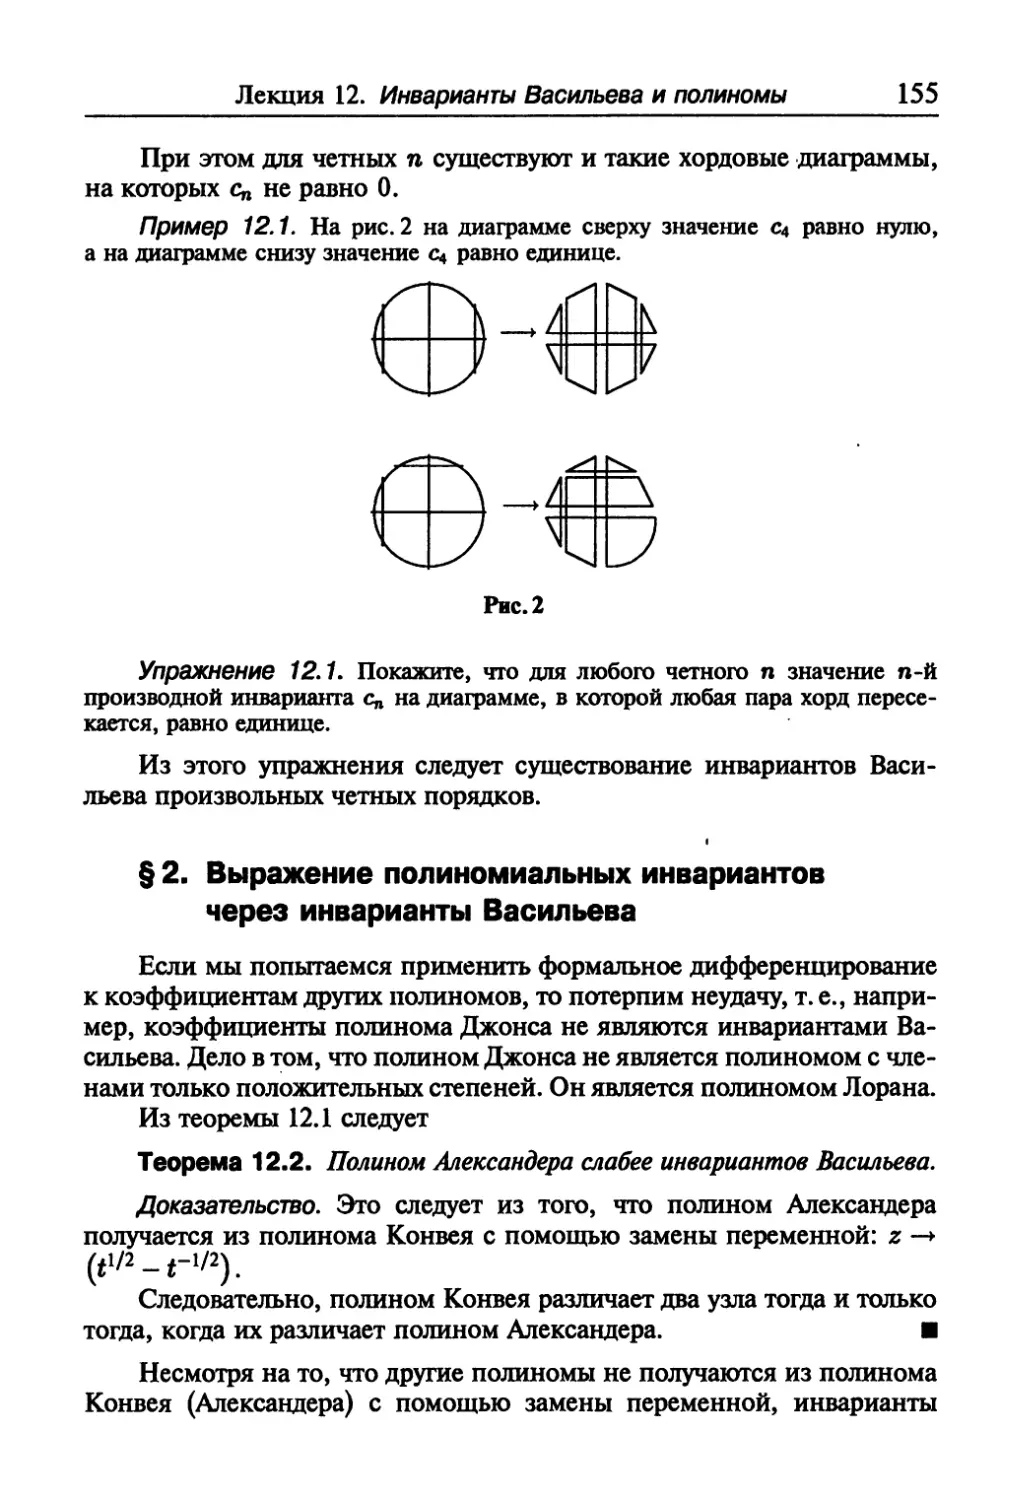 § 2. Выражение полиномиальных инвариантов через инварианты Васильева